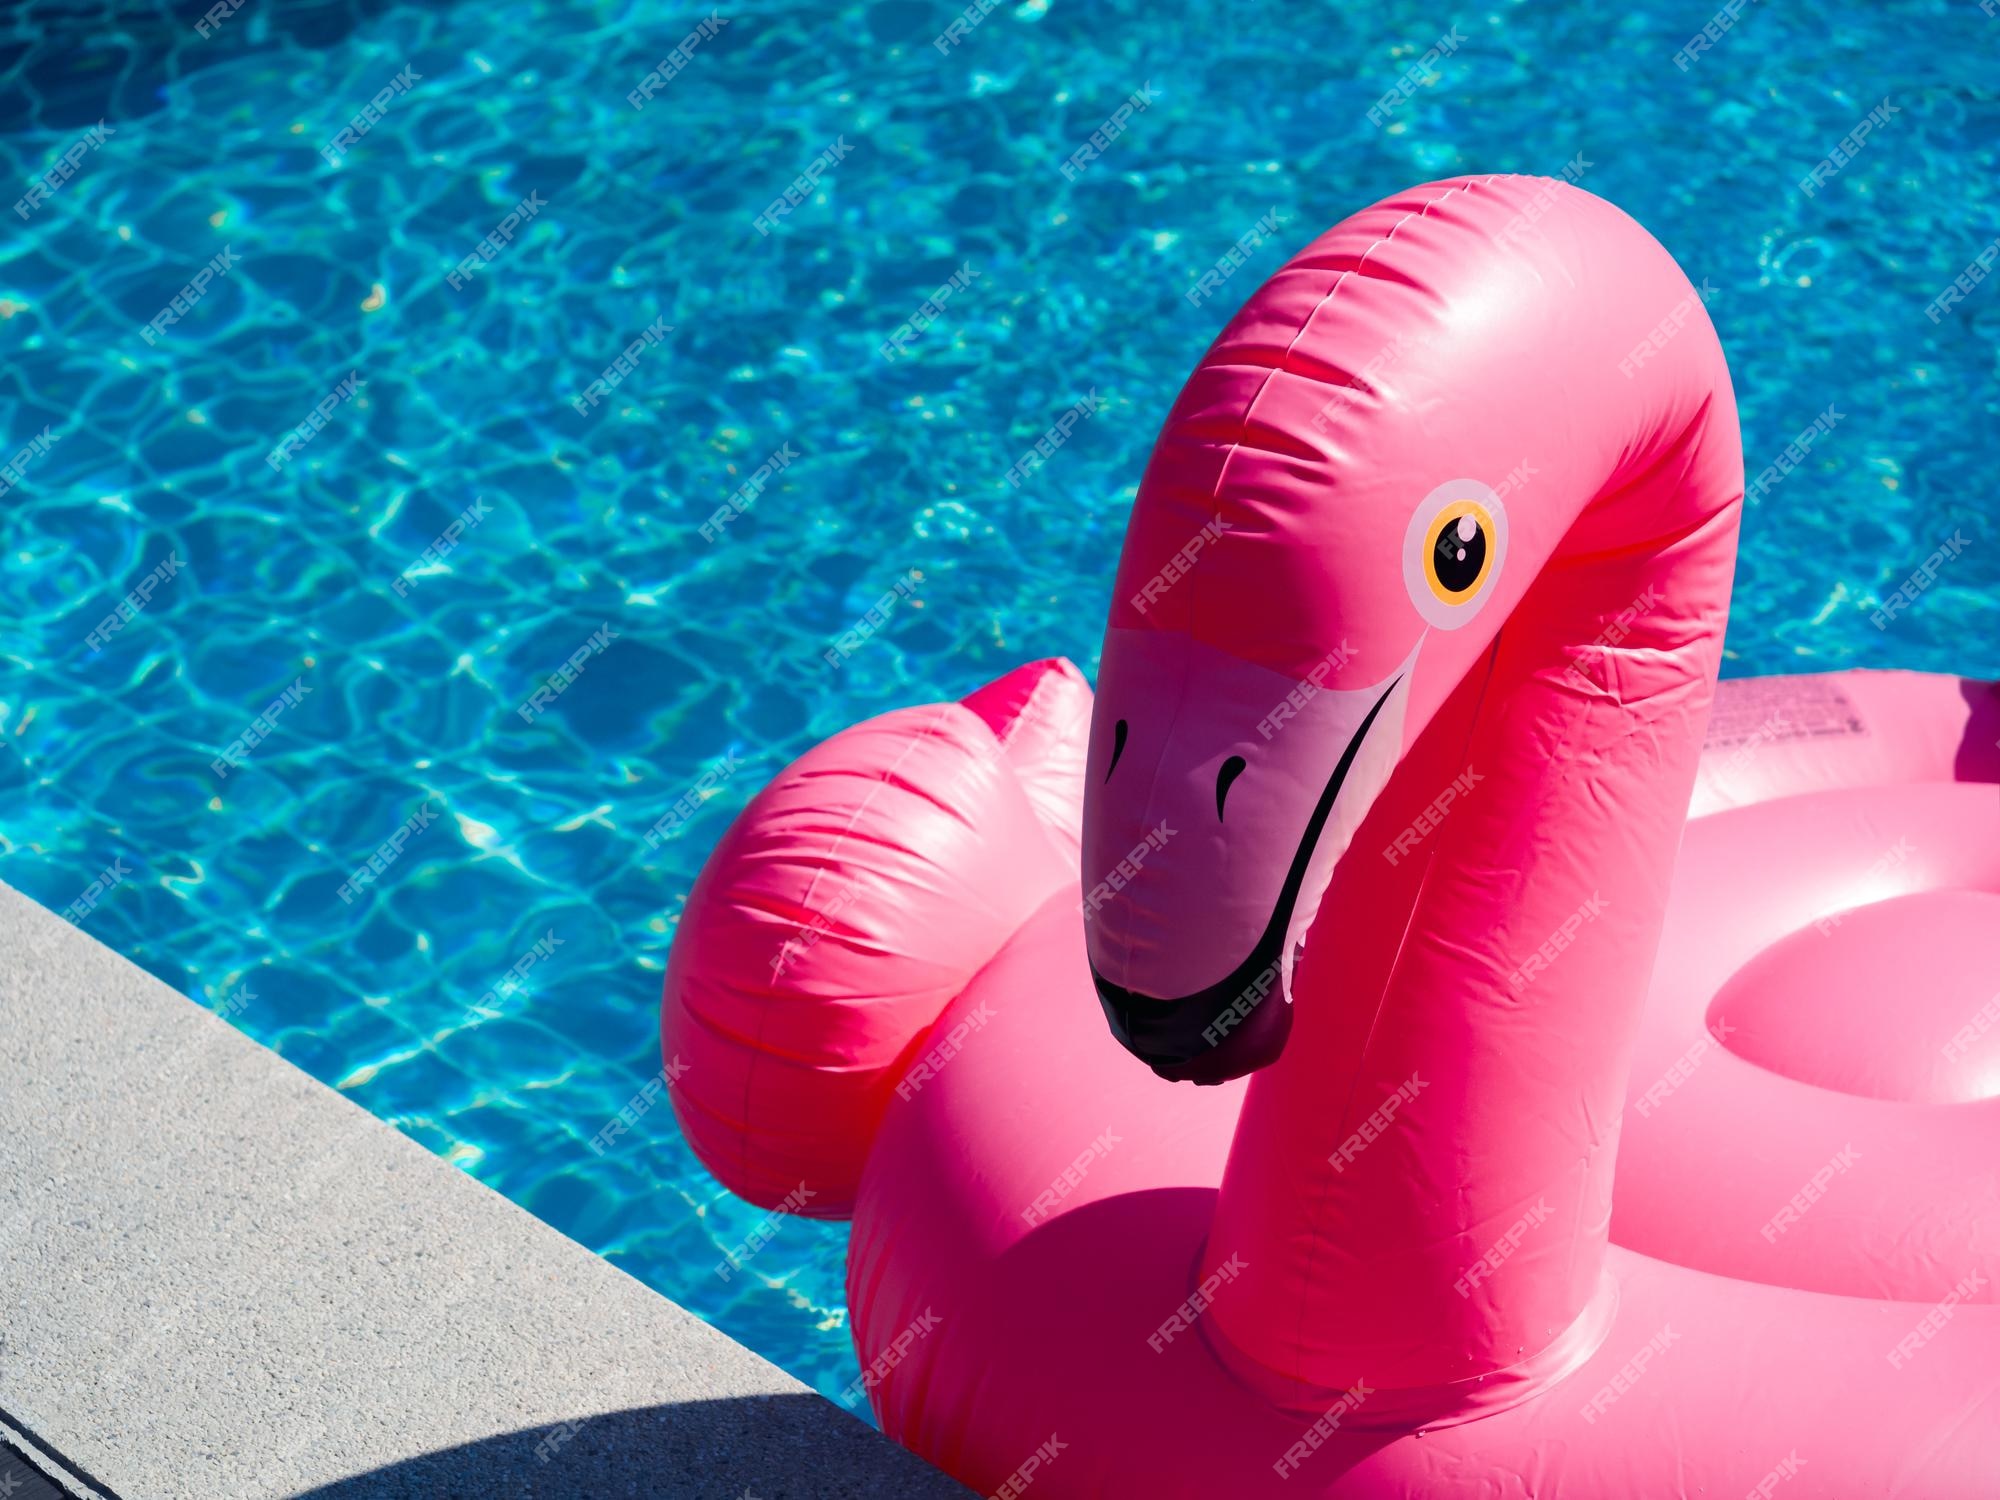 Bridge pier noot Smaak Sluit de roze opblaasbare ring, flamingo in het zwembad met kopieerruimte.  flamingo zwemring voor zomerstrand. | Premium Foto